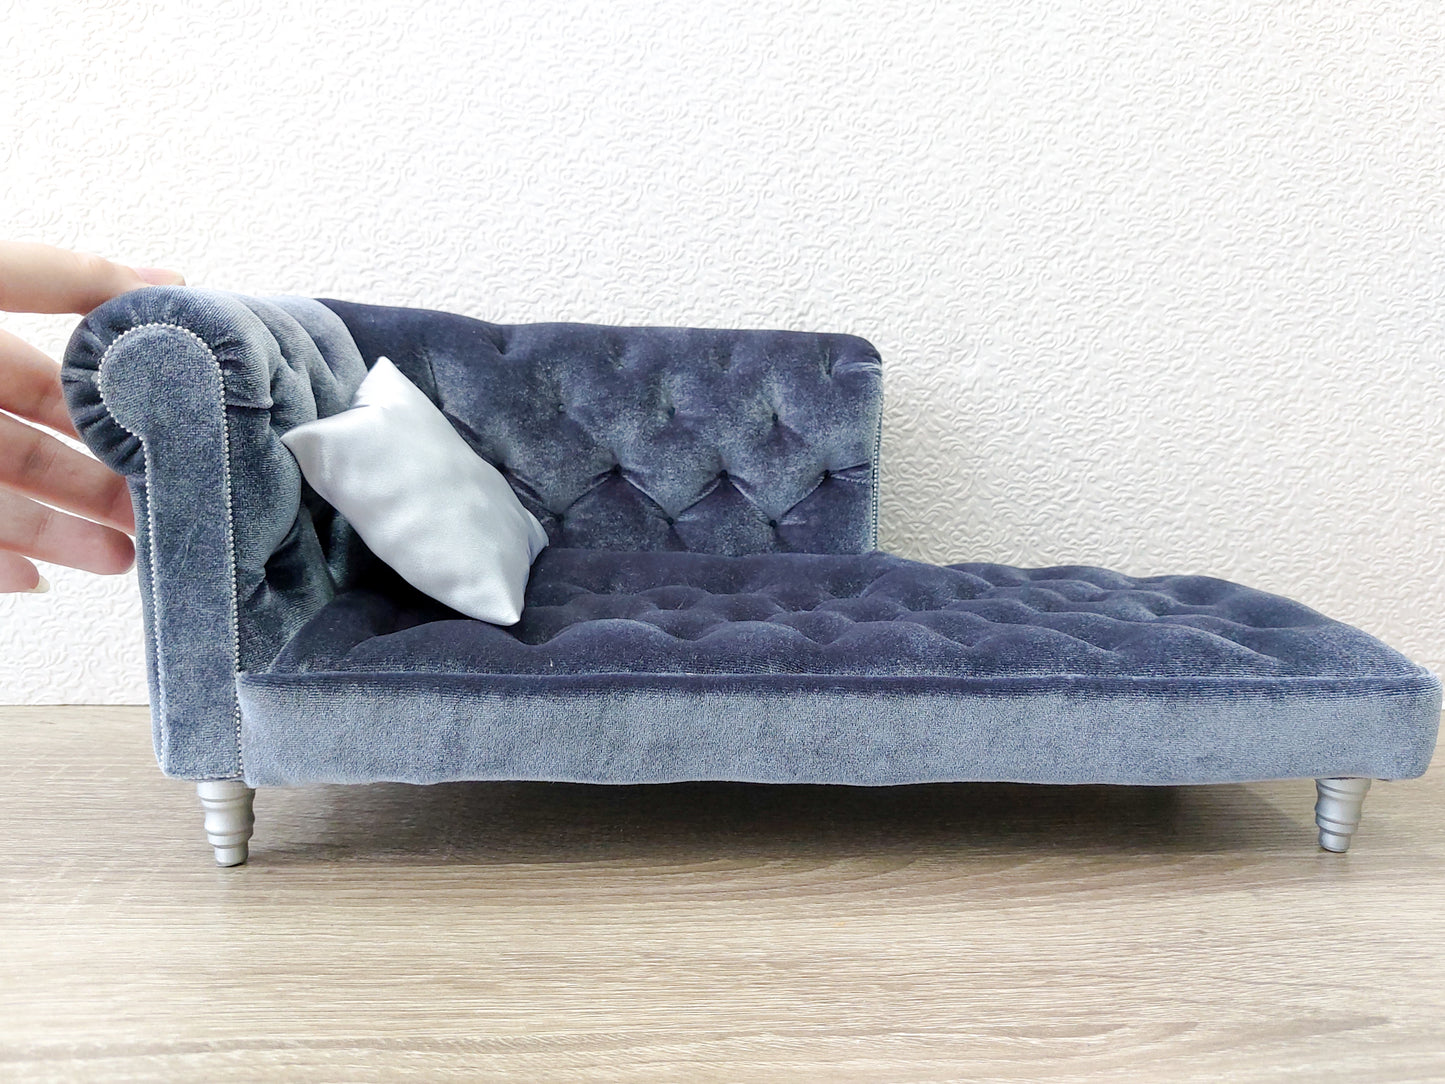 Chesterfield chaise lounge, blue gray velvet